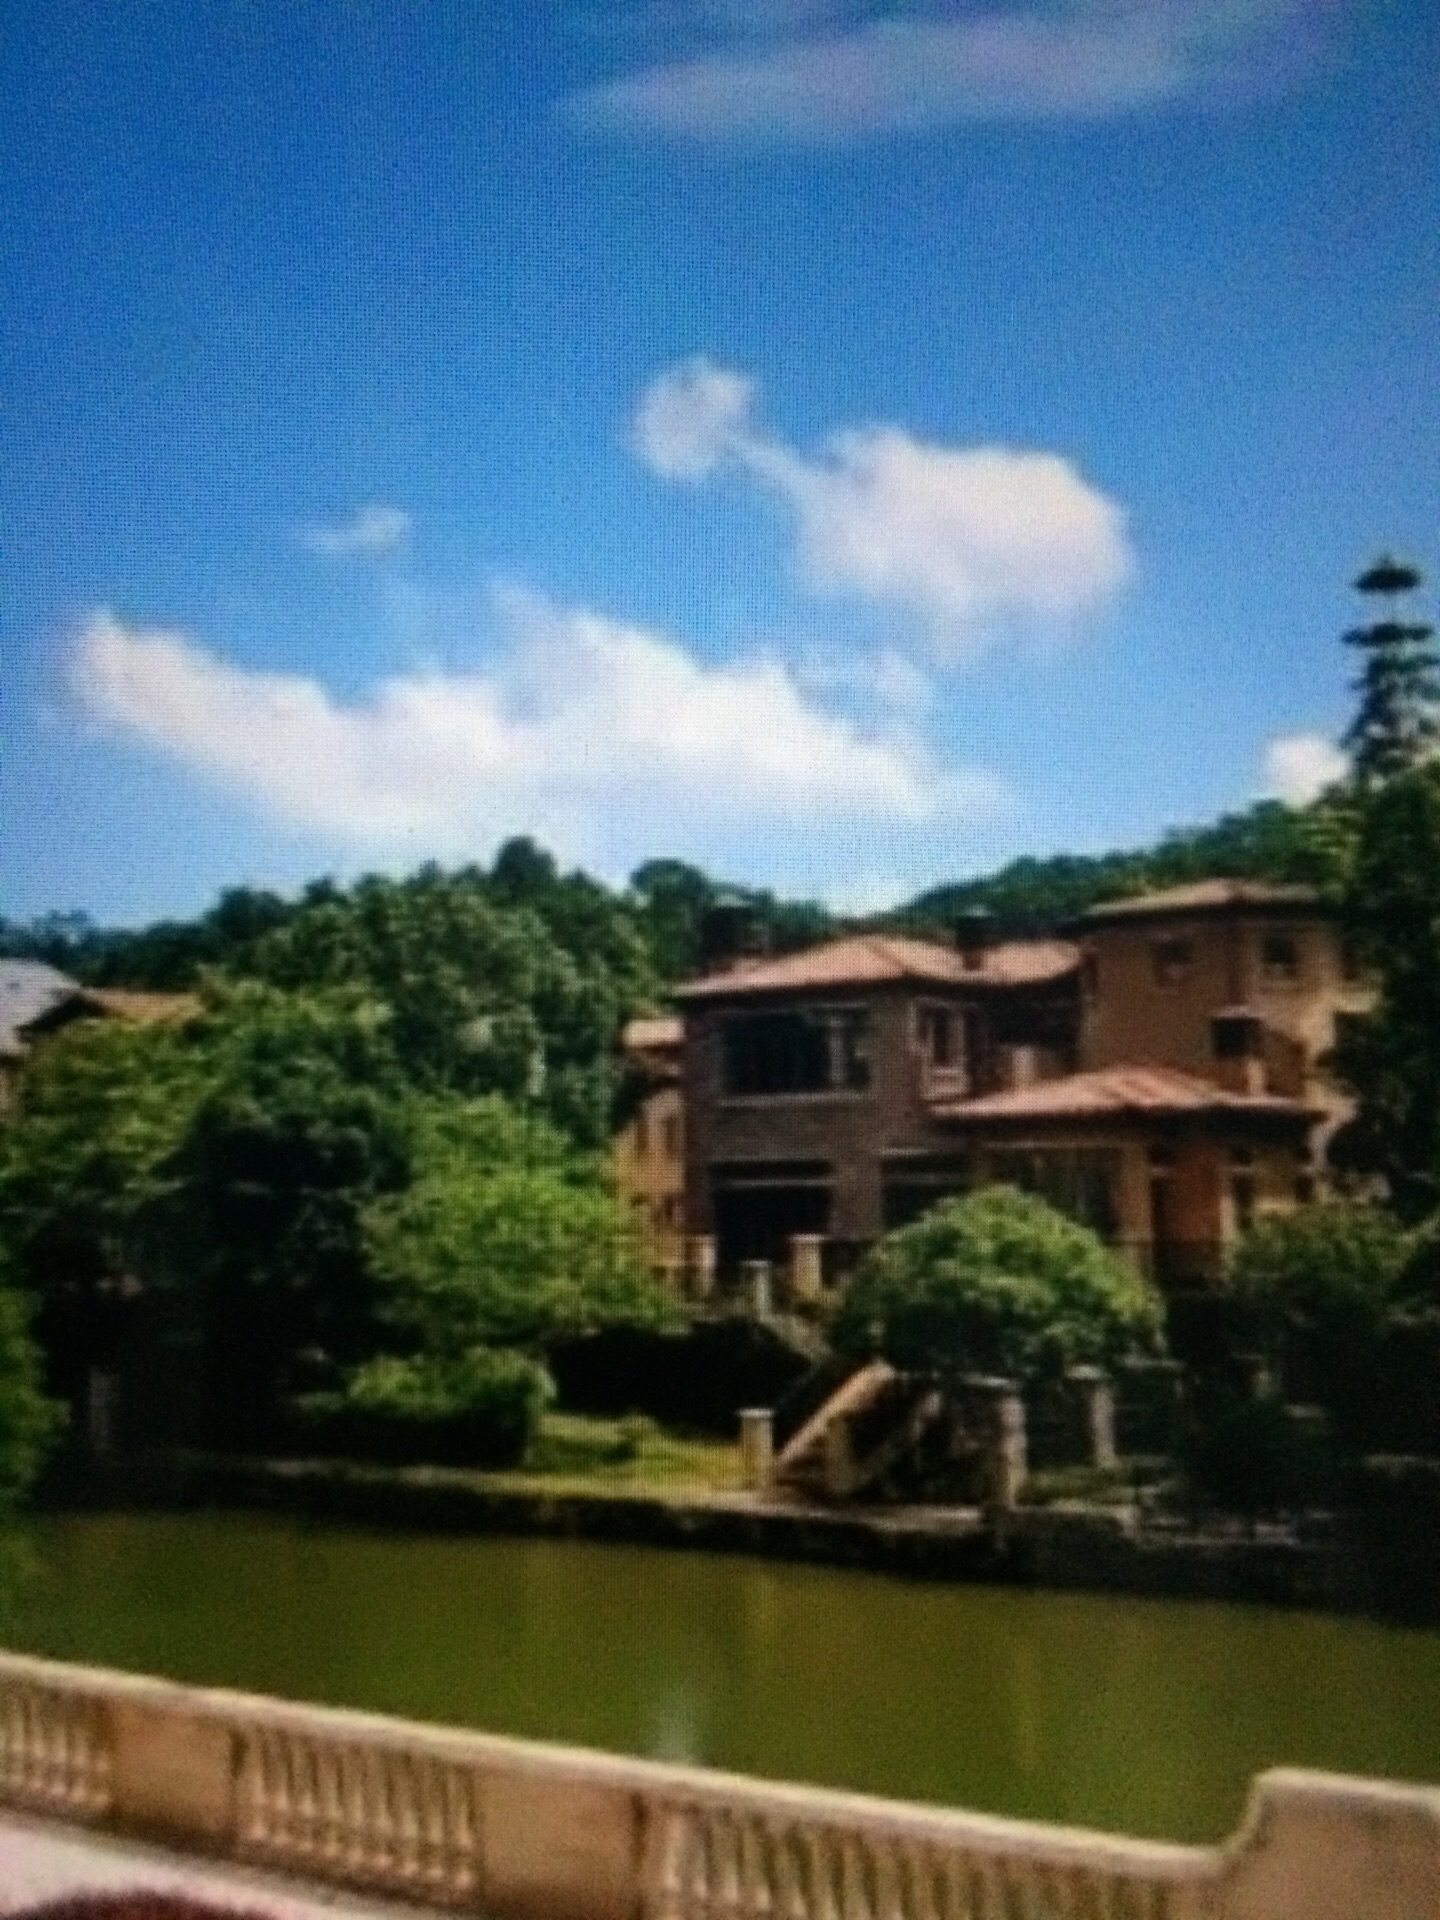 【携程攻略】广州九龙湖度假区景点,九龙湖分两个区，山上是生态公园（含国王酒店），山下是欧洲小镇（含…